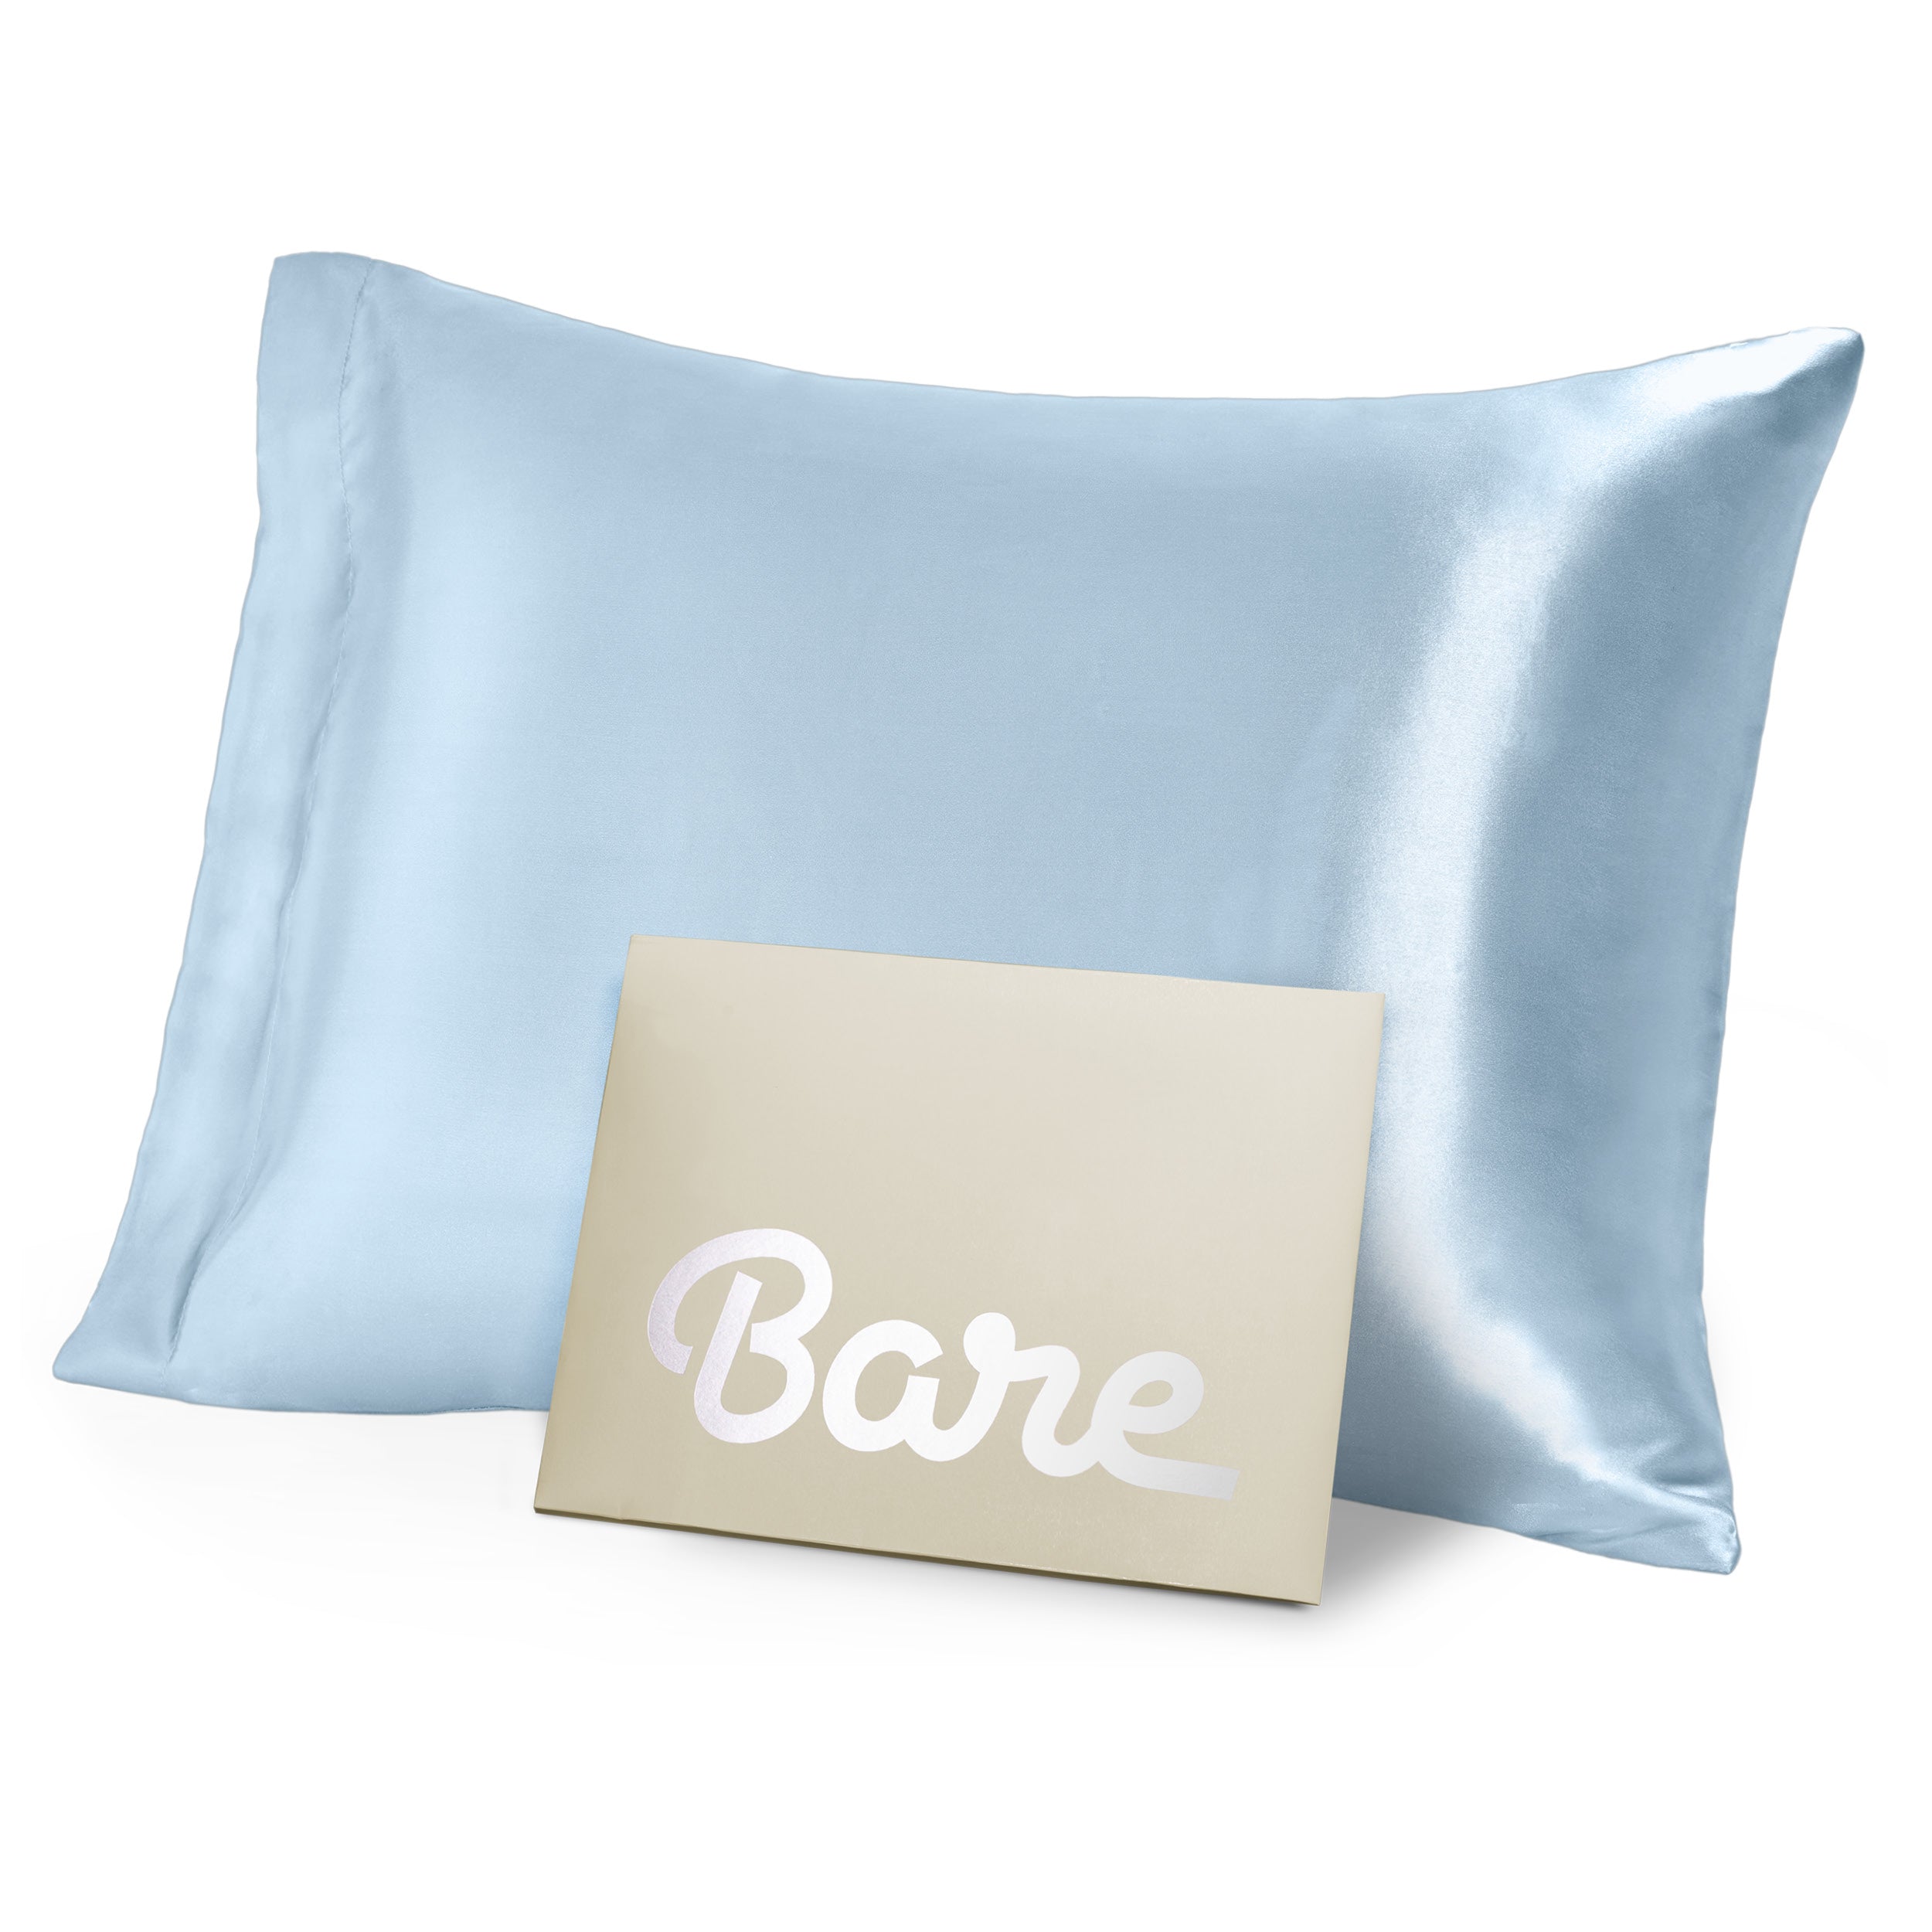 A blue mulberry silk pillowcase on a pillow